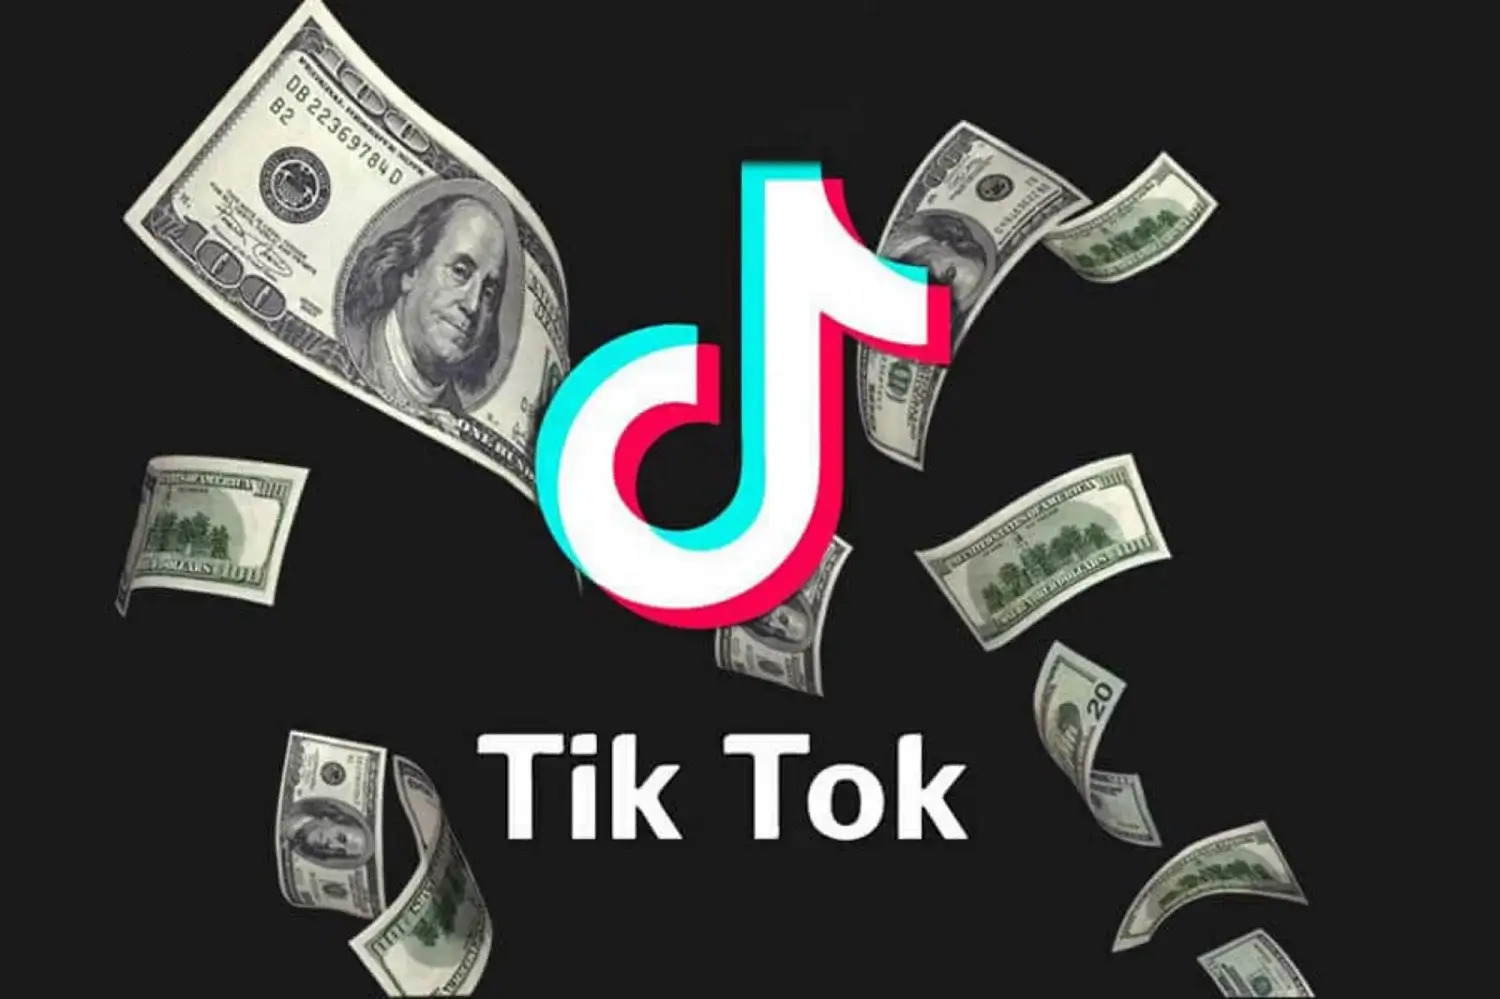 Top 12 Proven Ideas To Make Money On TikTok